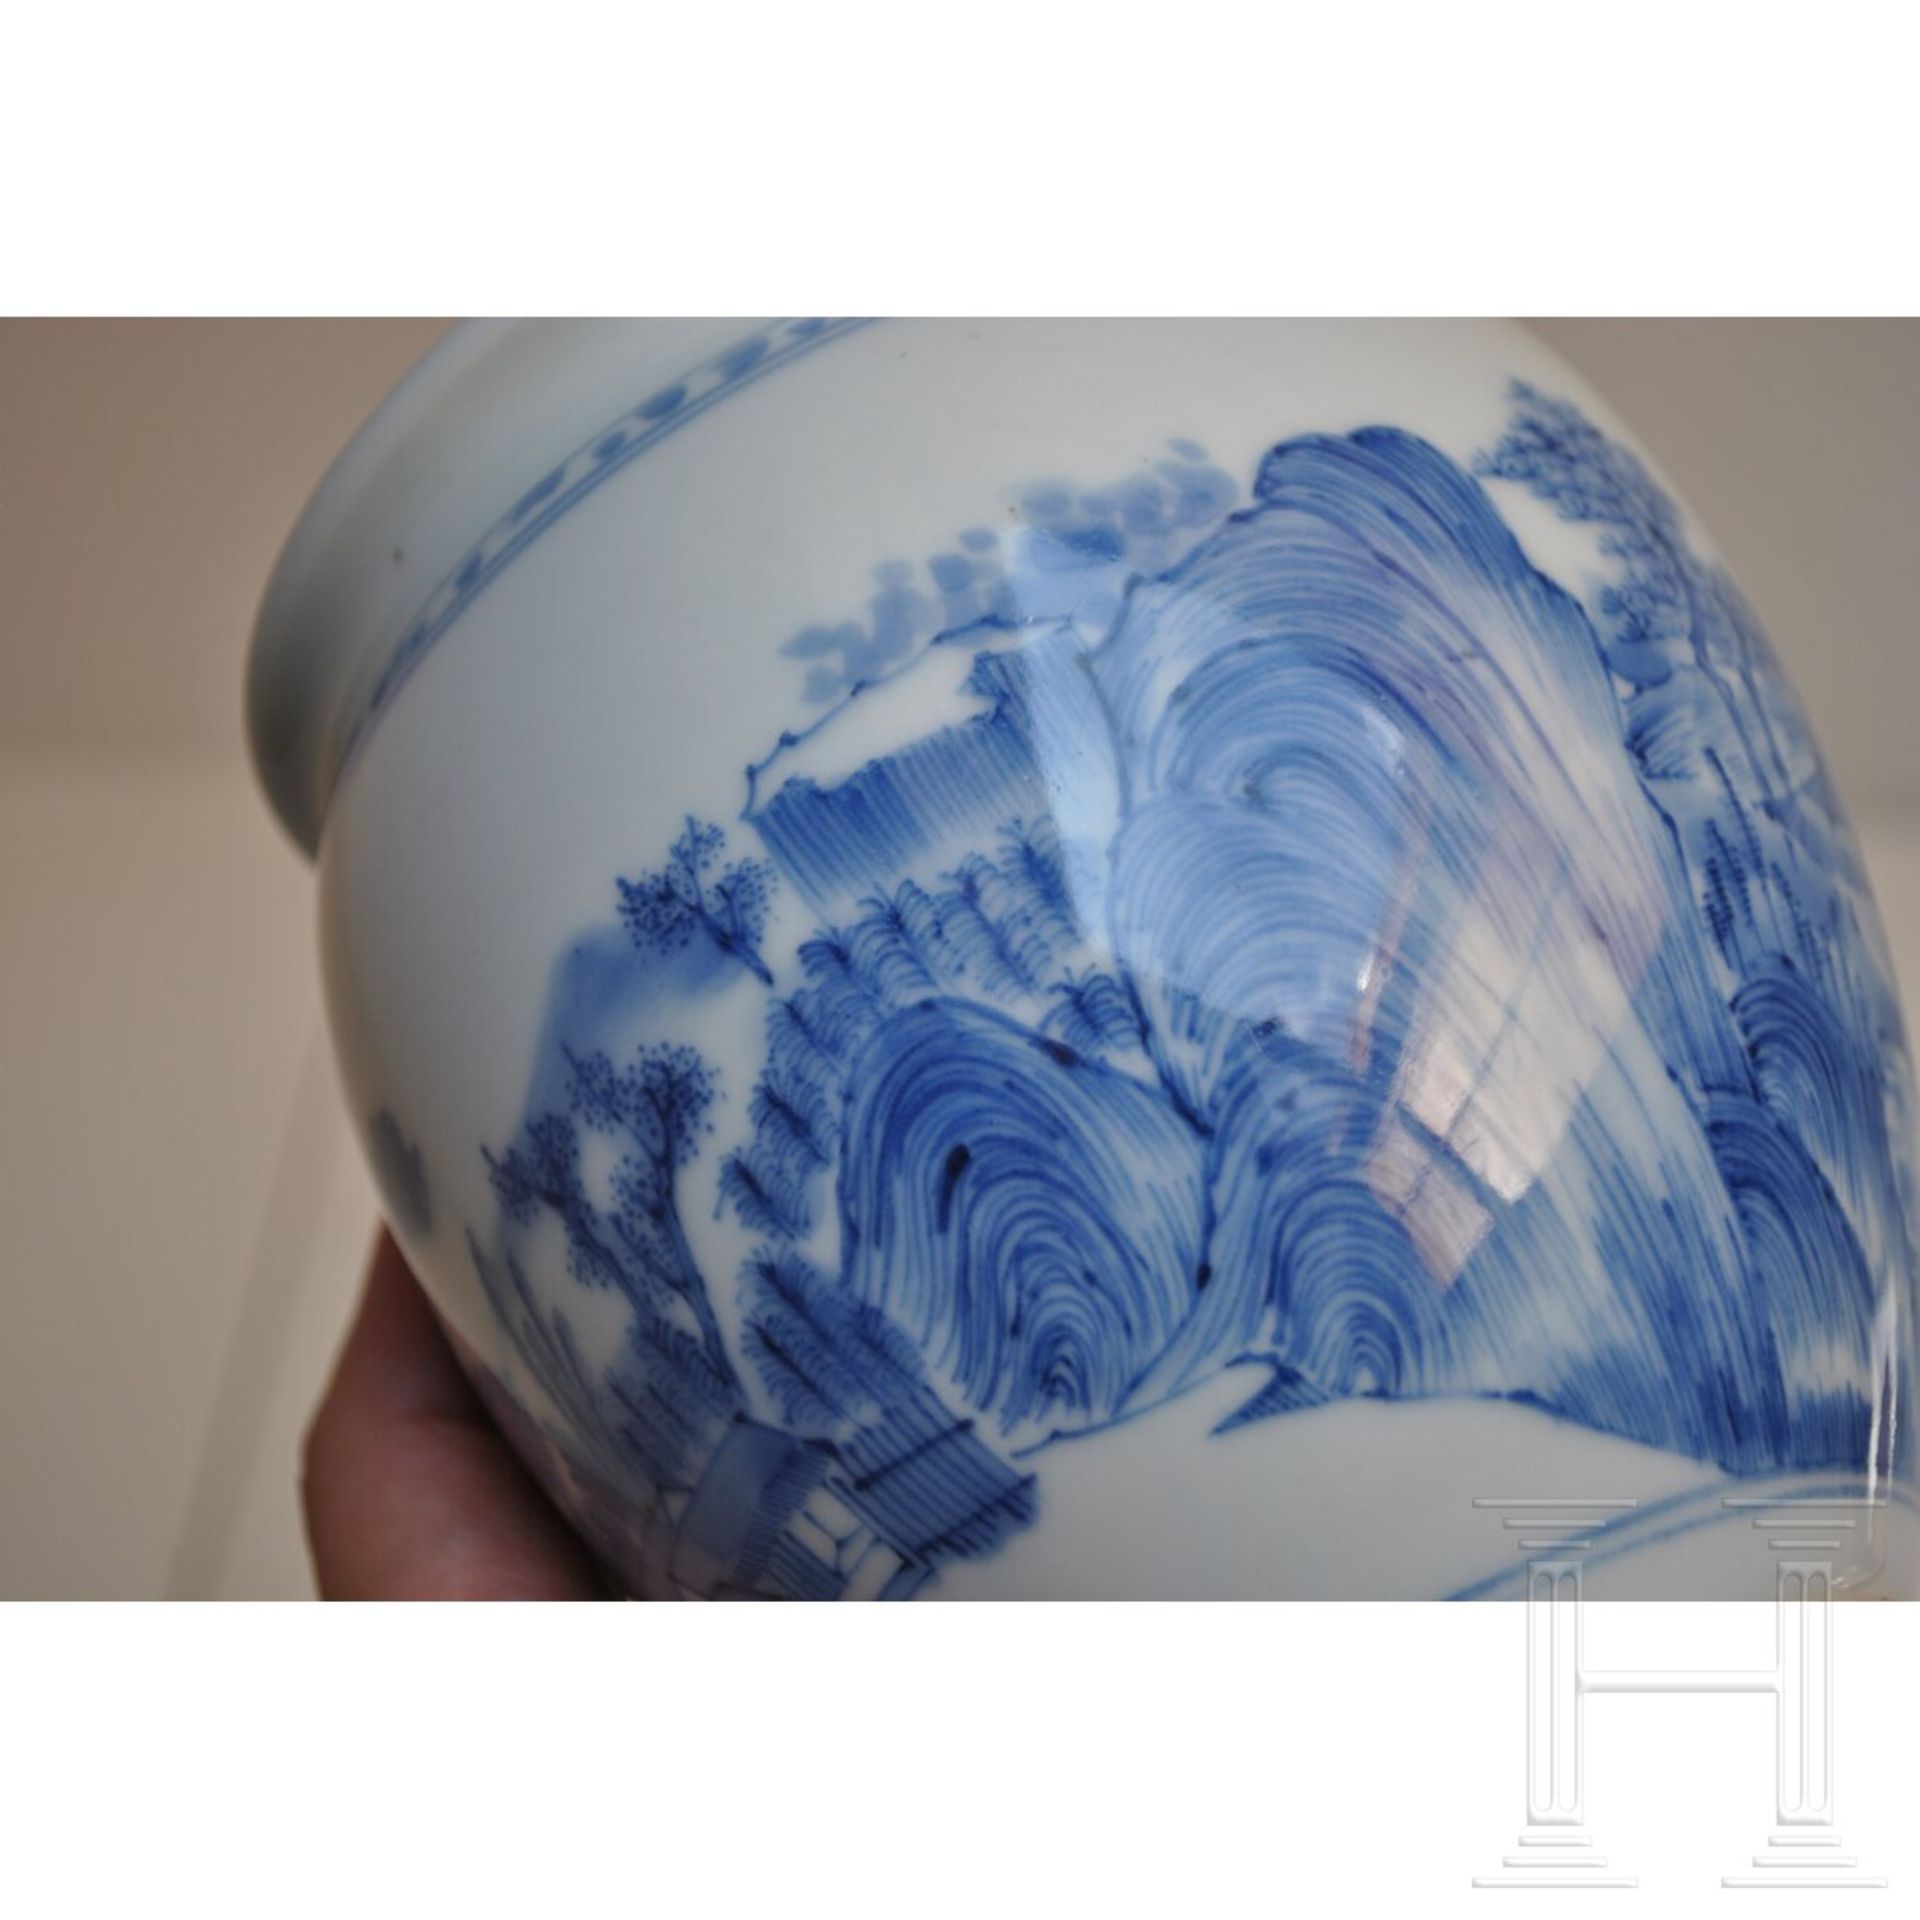 Blau-weiße Vase mit Seenlandschaft, China, wohl Kangxi-Periode (18. Jhdt.) - Bild 8 aus 15